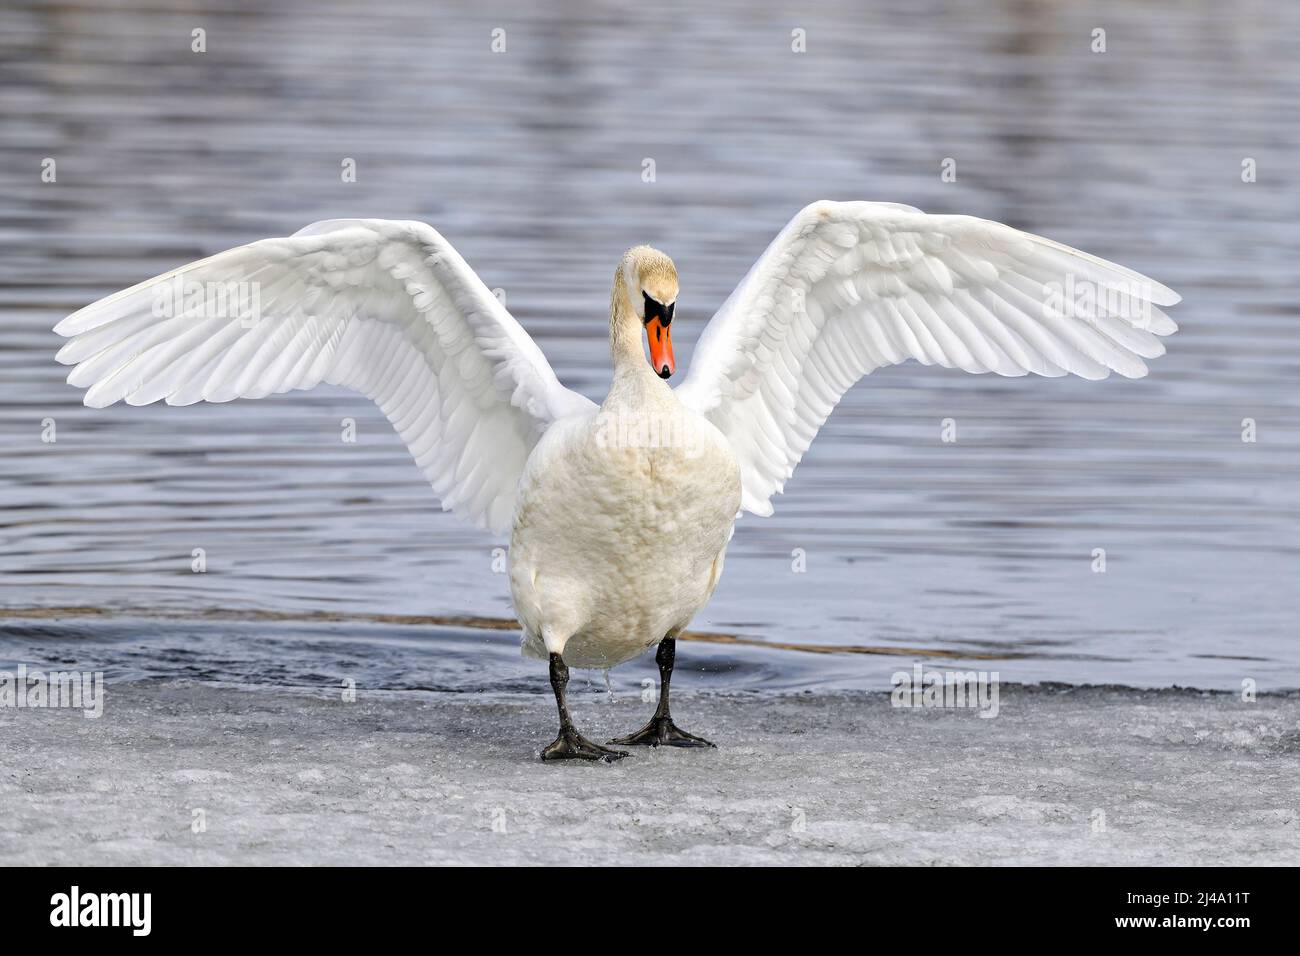 Mute el cisne que sale del agua fría Foto de stock